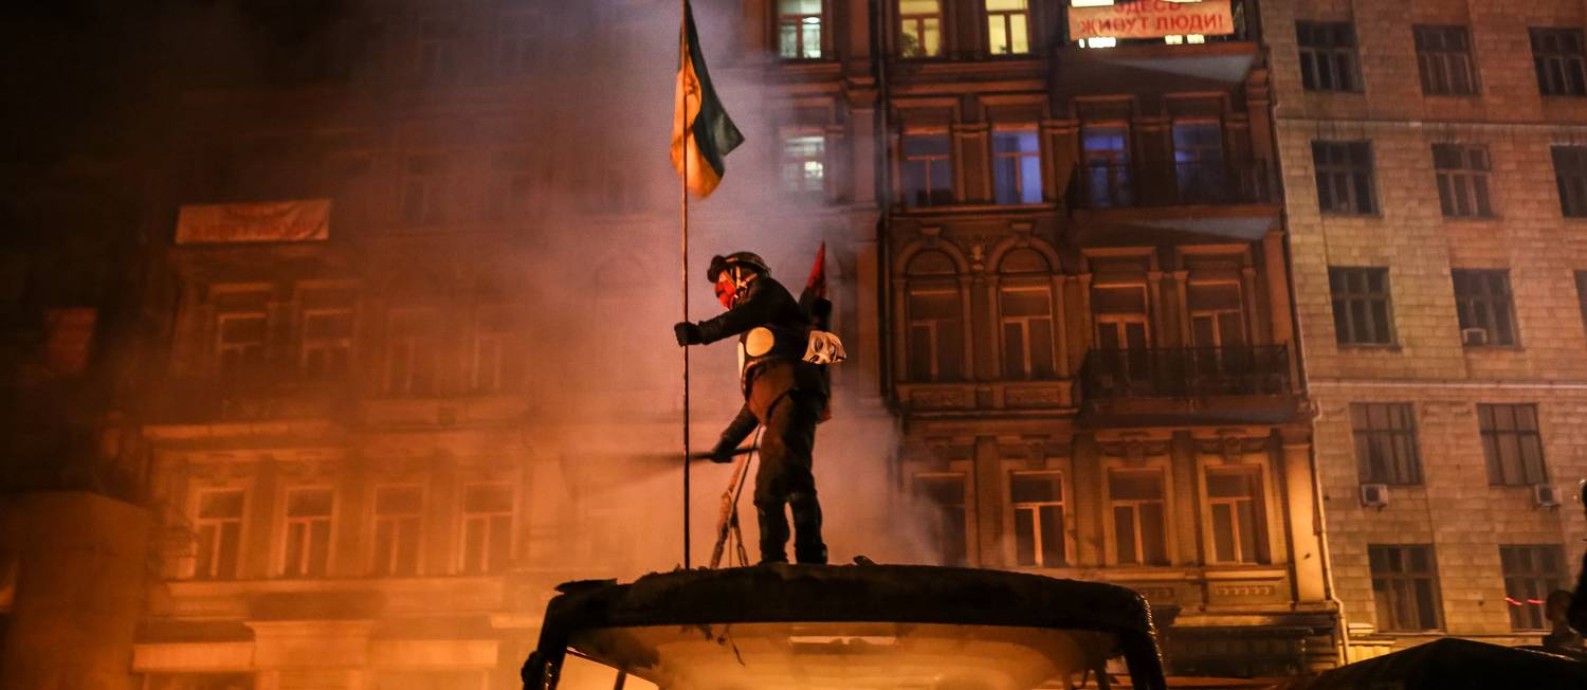 Documentário “Winter on fire: Ukraine’s fight for freedom” (2015) Foto: Arturas Morozovas / Divulgação